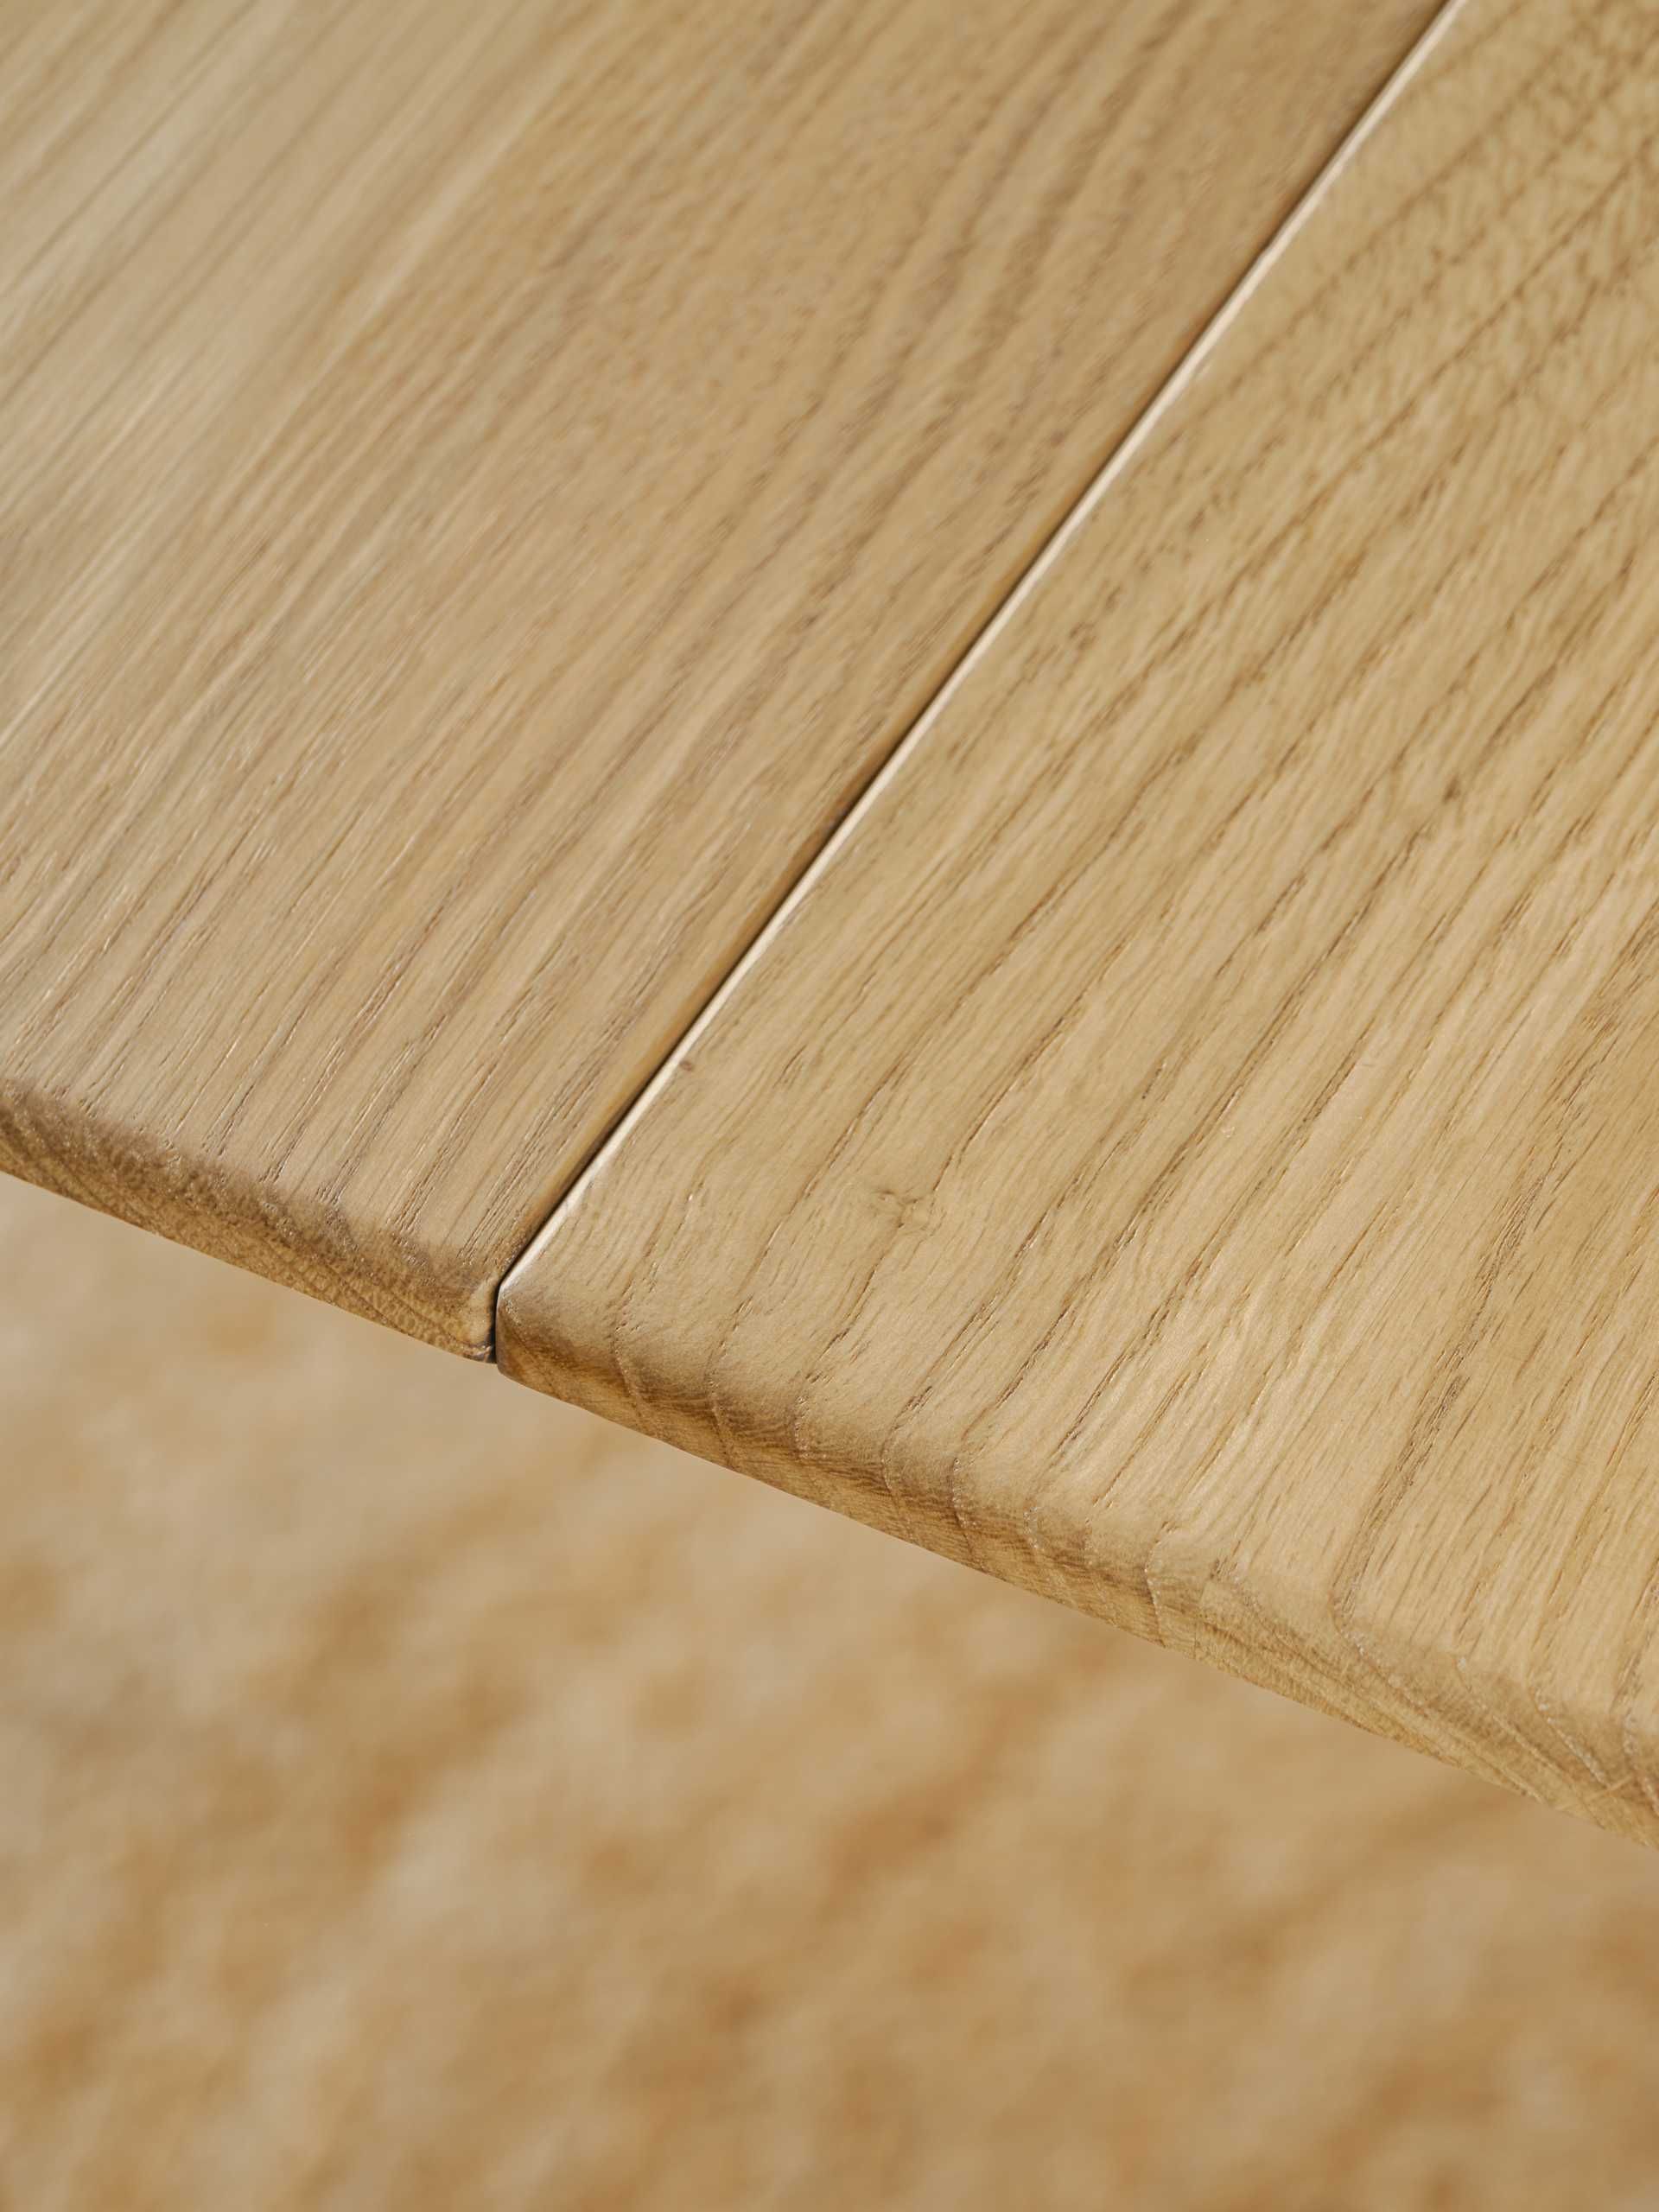 Drewniany stół - dębowy stół - okrągły stół rozkładany - od ręki-